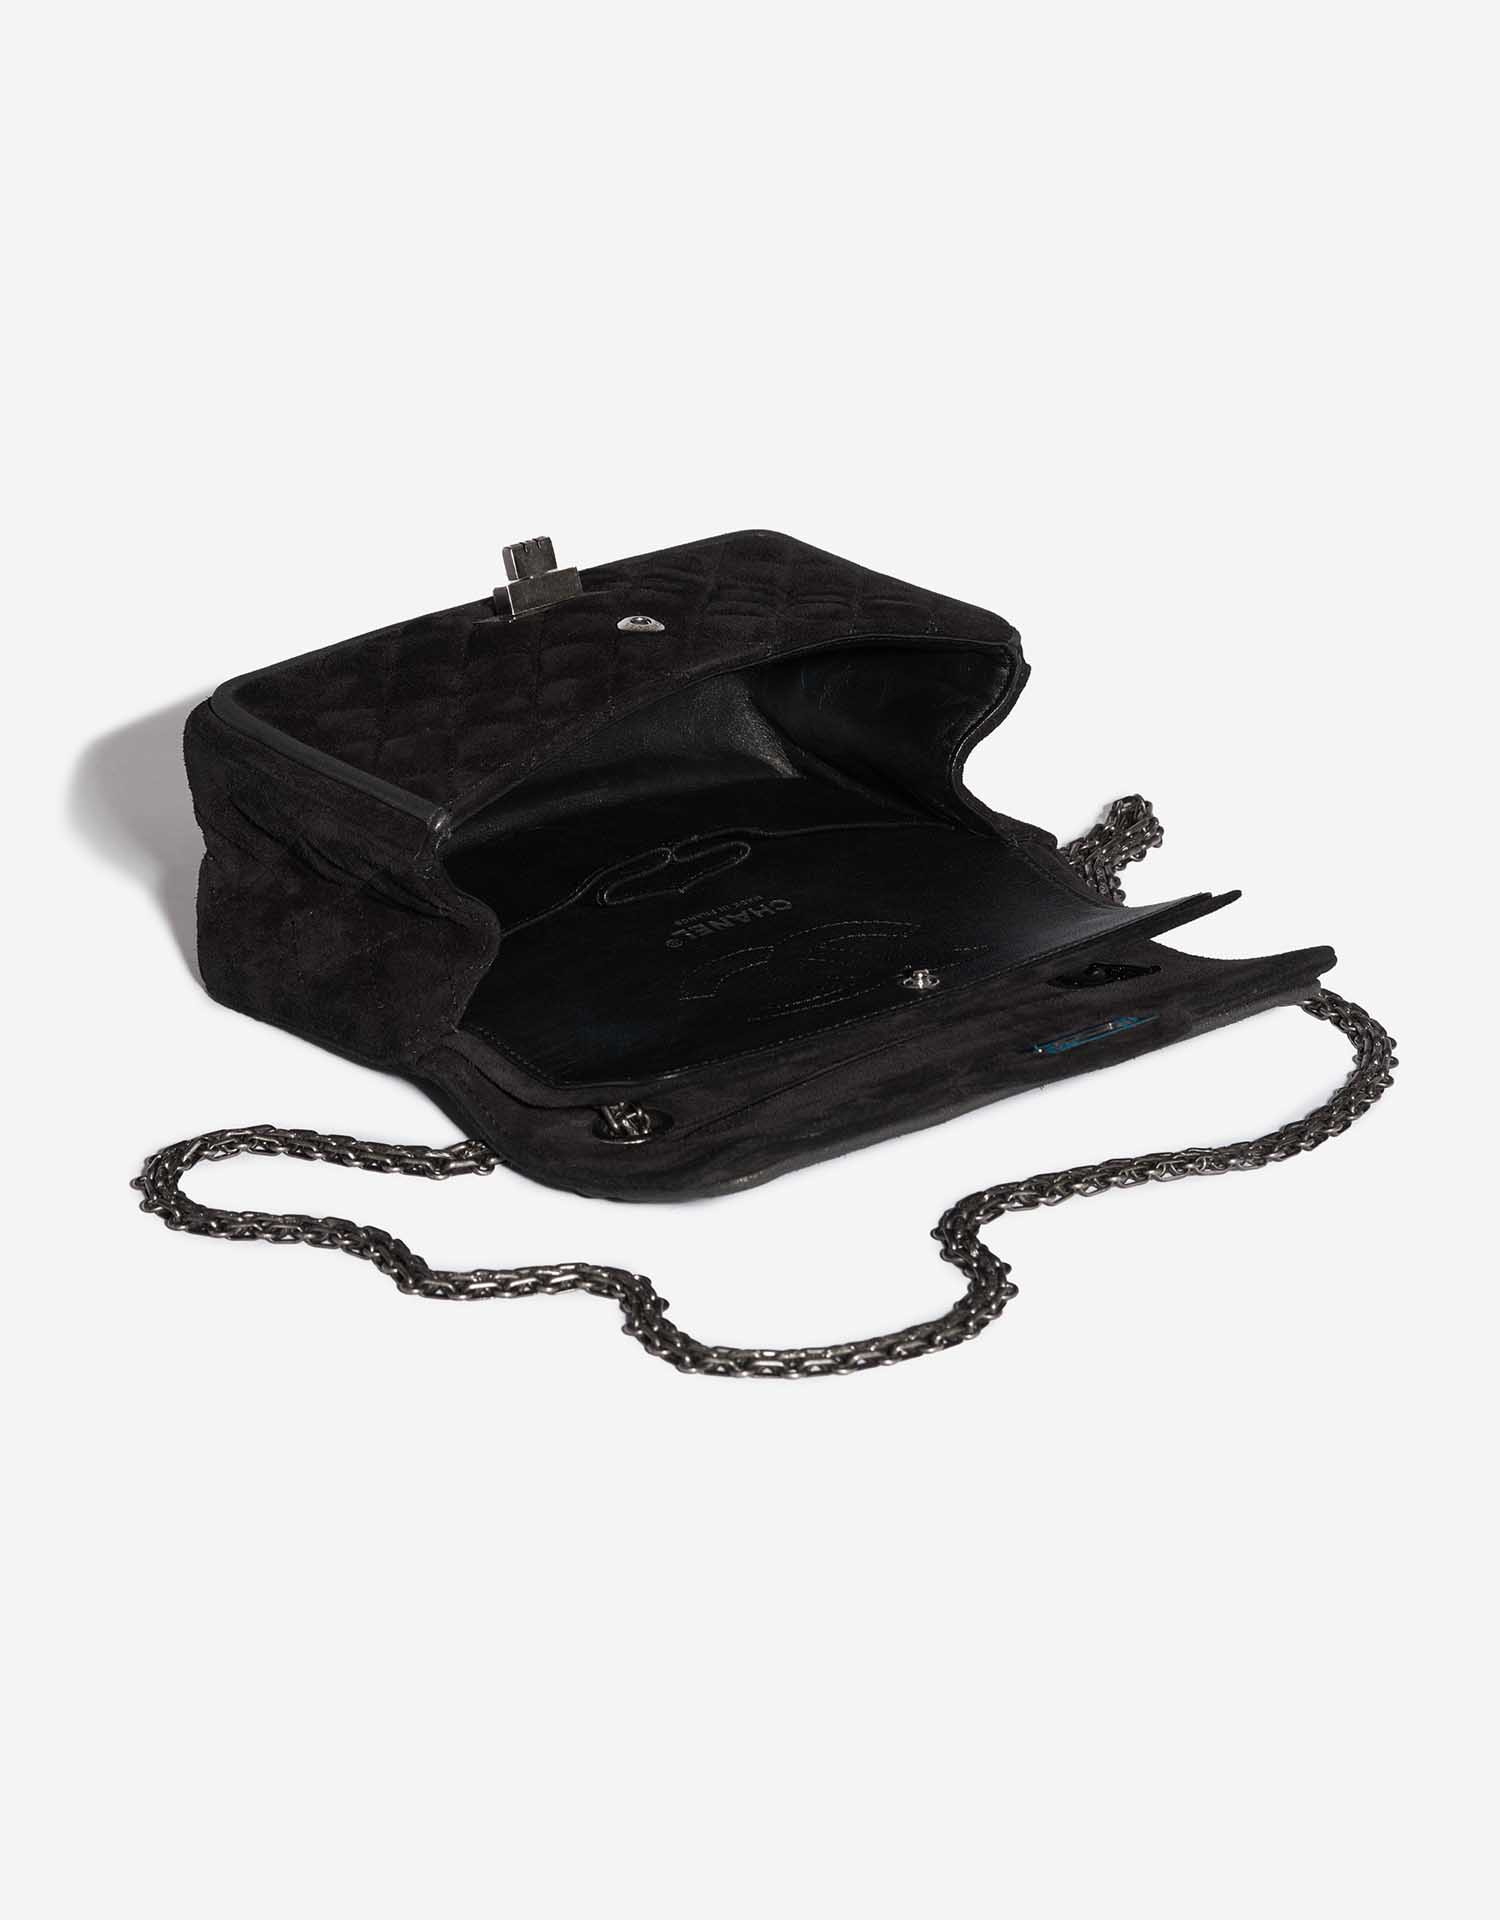 Pre-owned Chanel bag 2.55 Reissue Velvet Black Black Inside | Sell your designer bag on Saclab.com